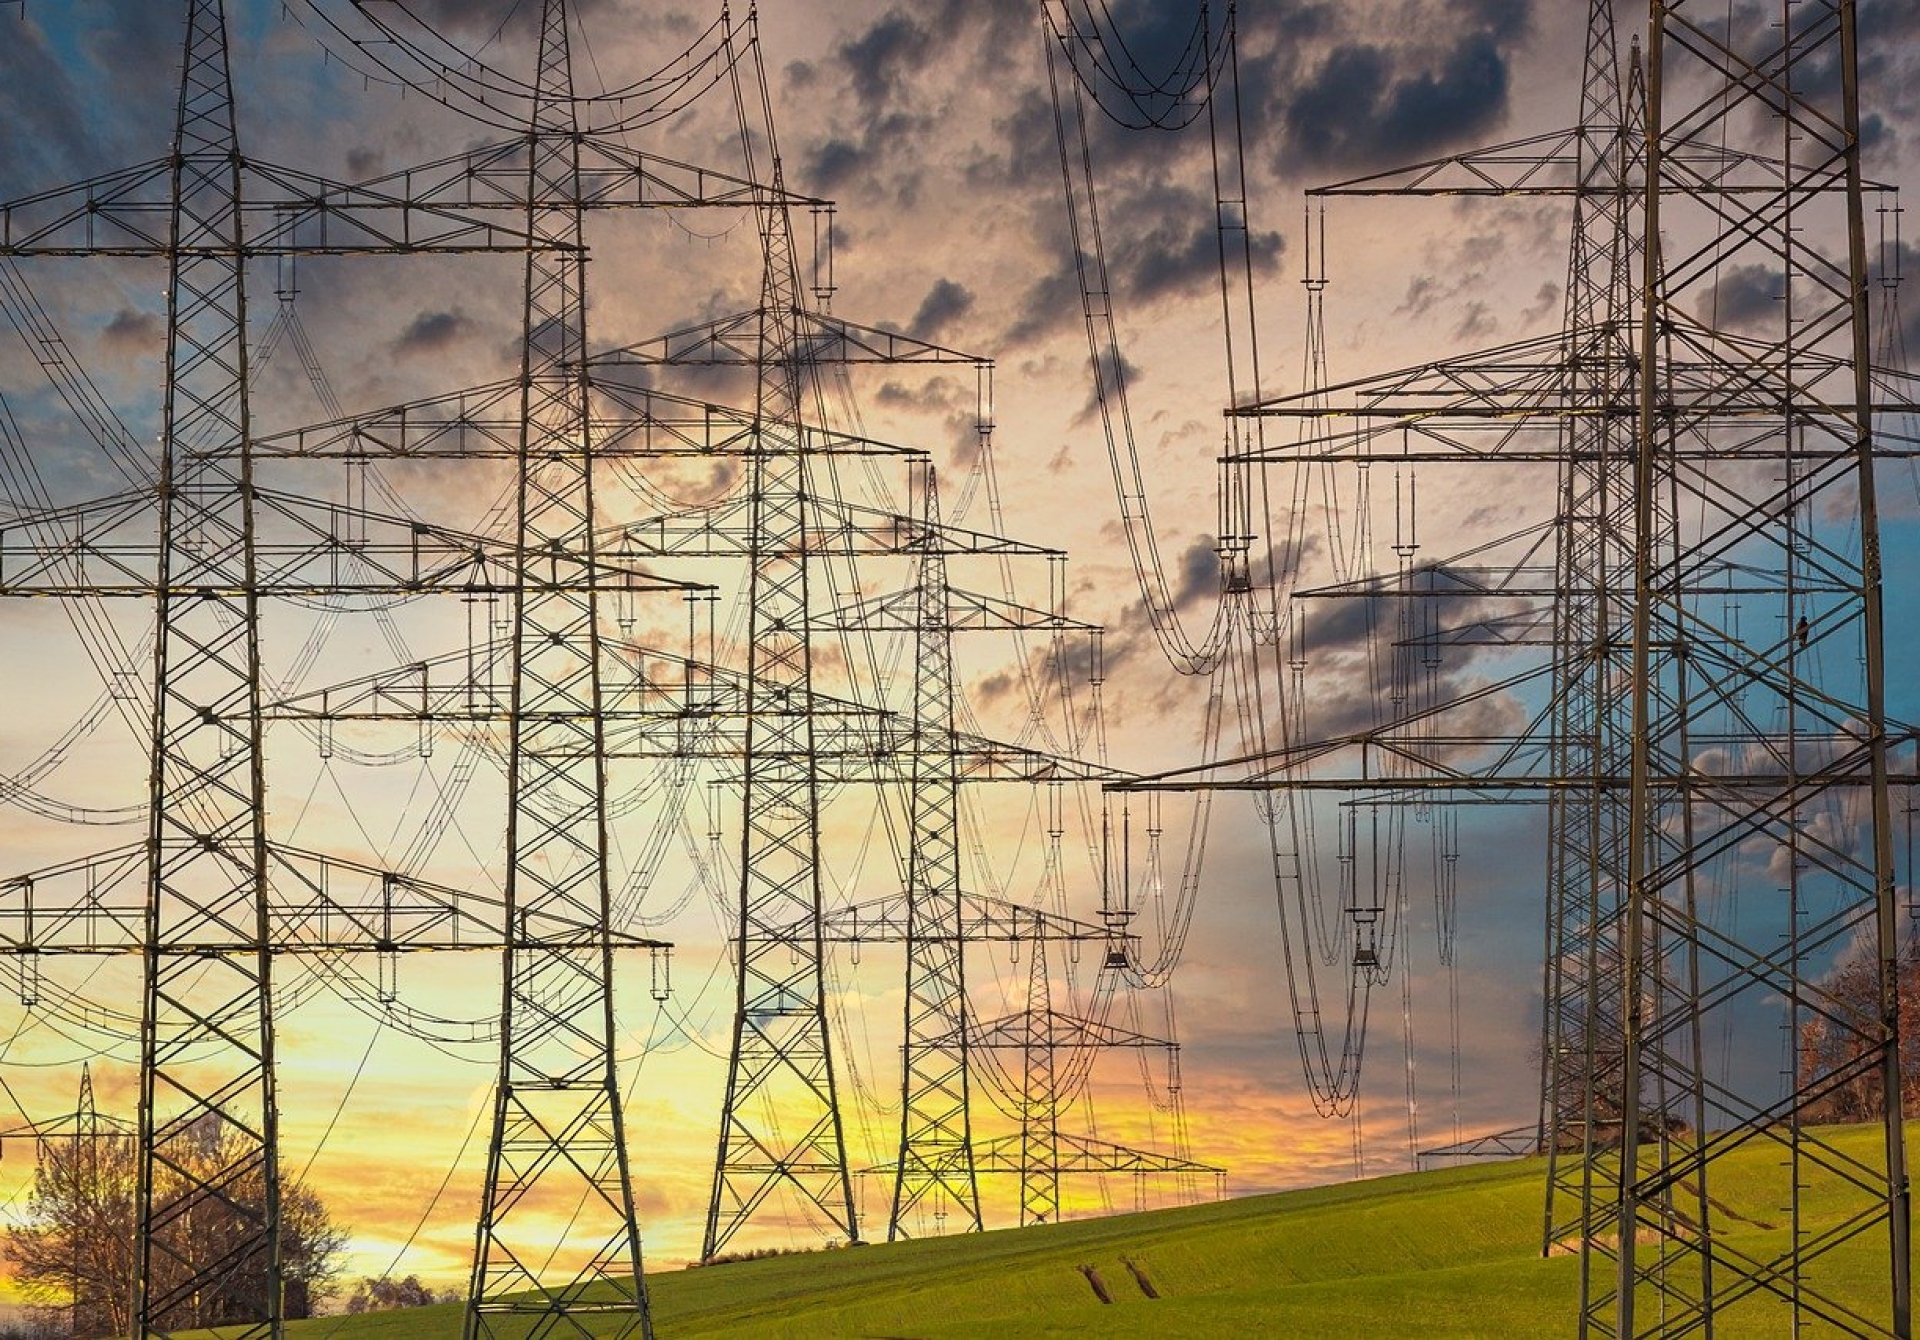  Gaz, électricité : quels délais pour vous adresser une facture de régularisation ?